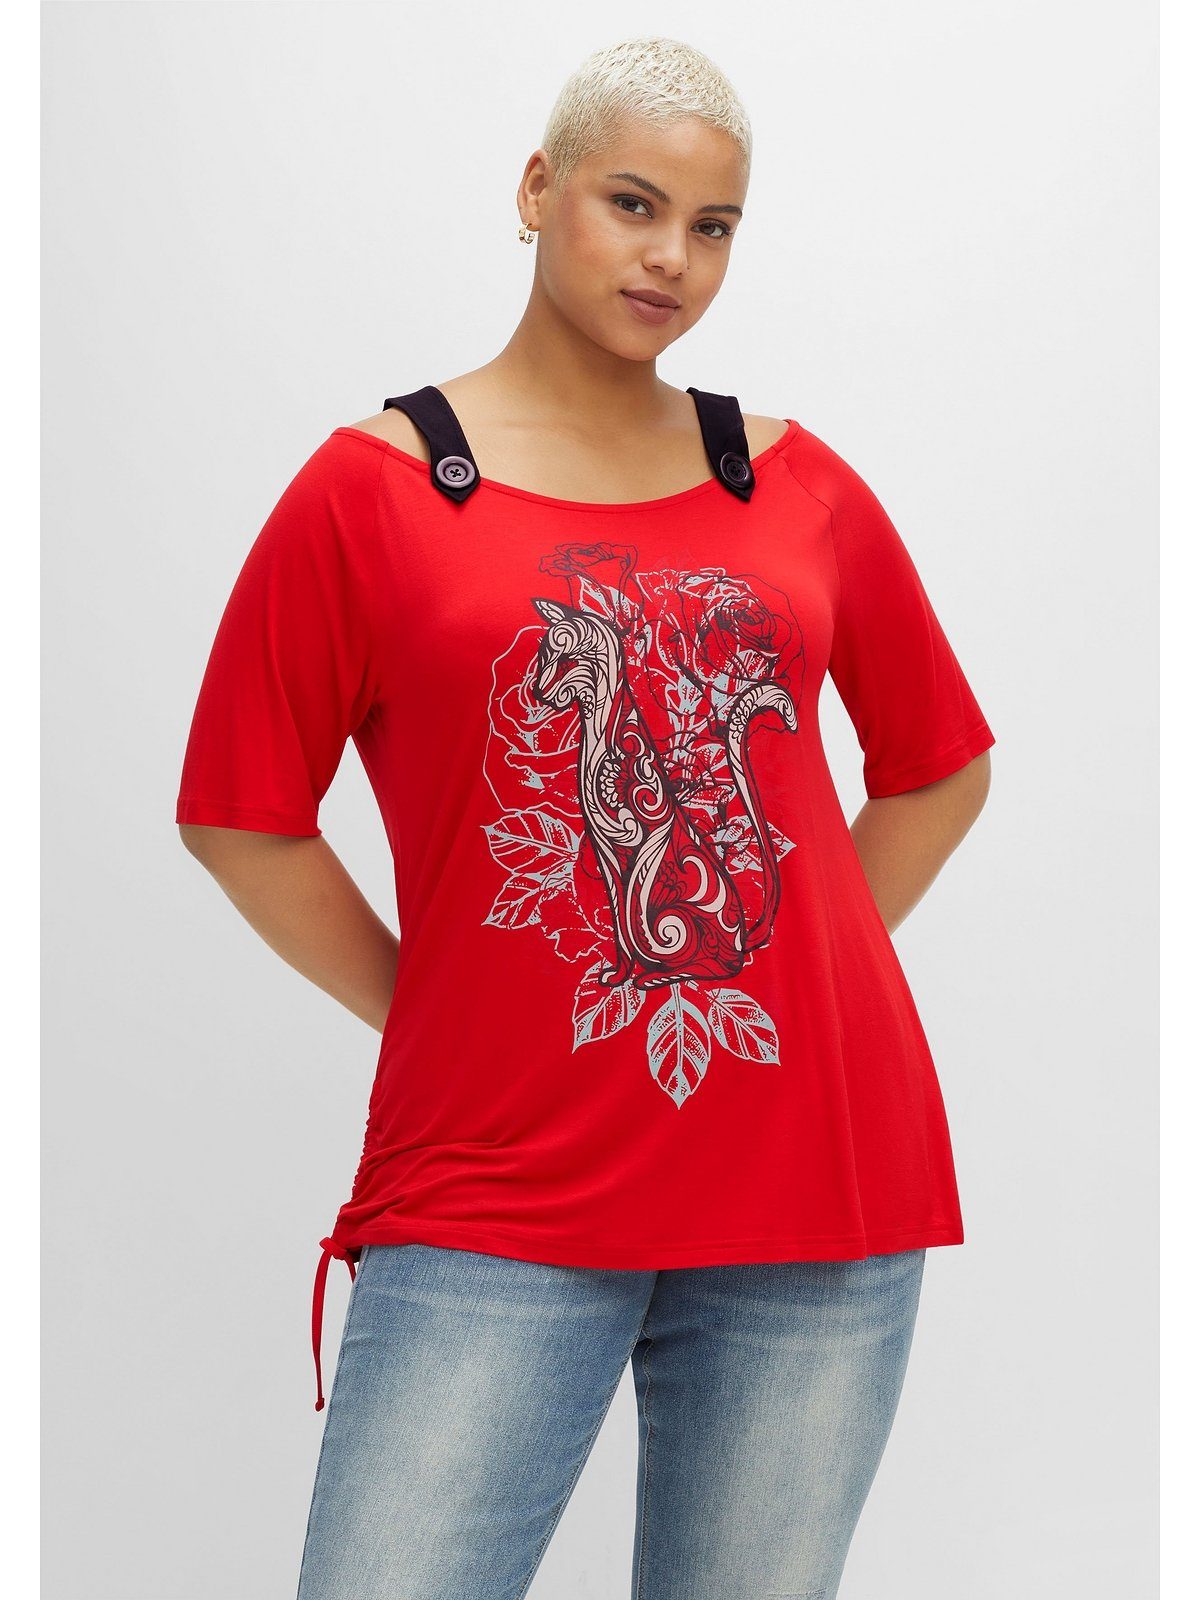 sheego by Joe Browns T-Shirt Große Größen mit Trägern und Frontdruck | T-Shirts